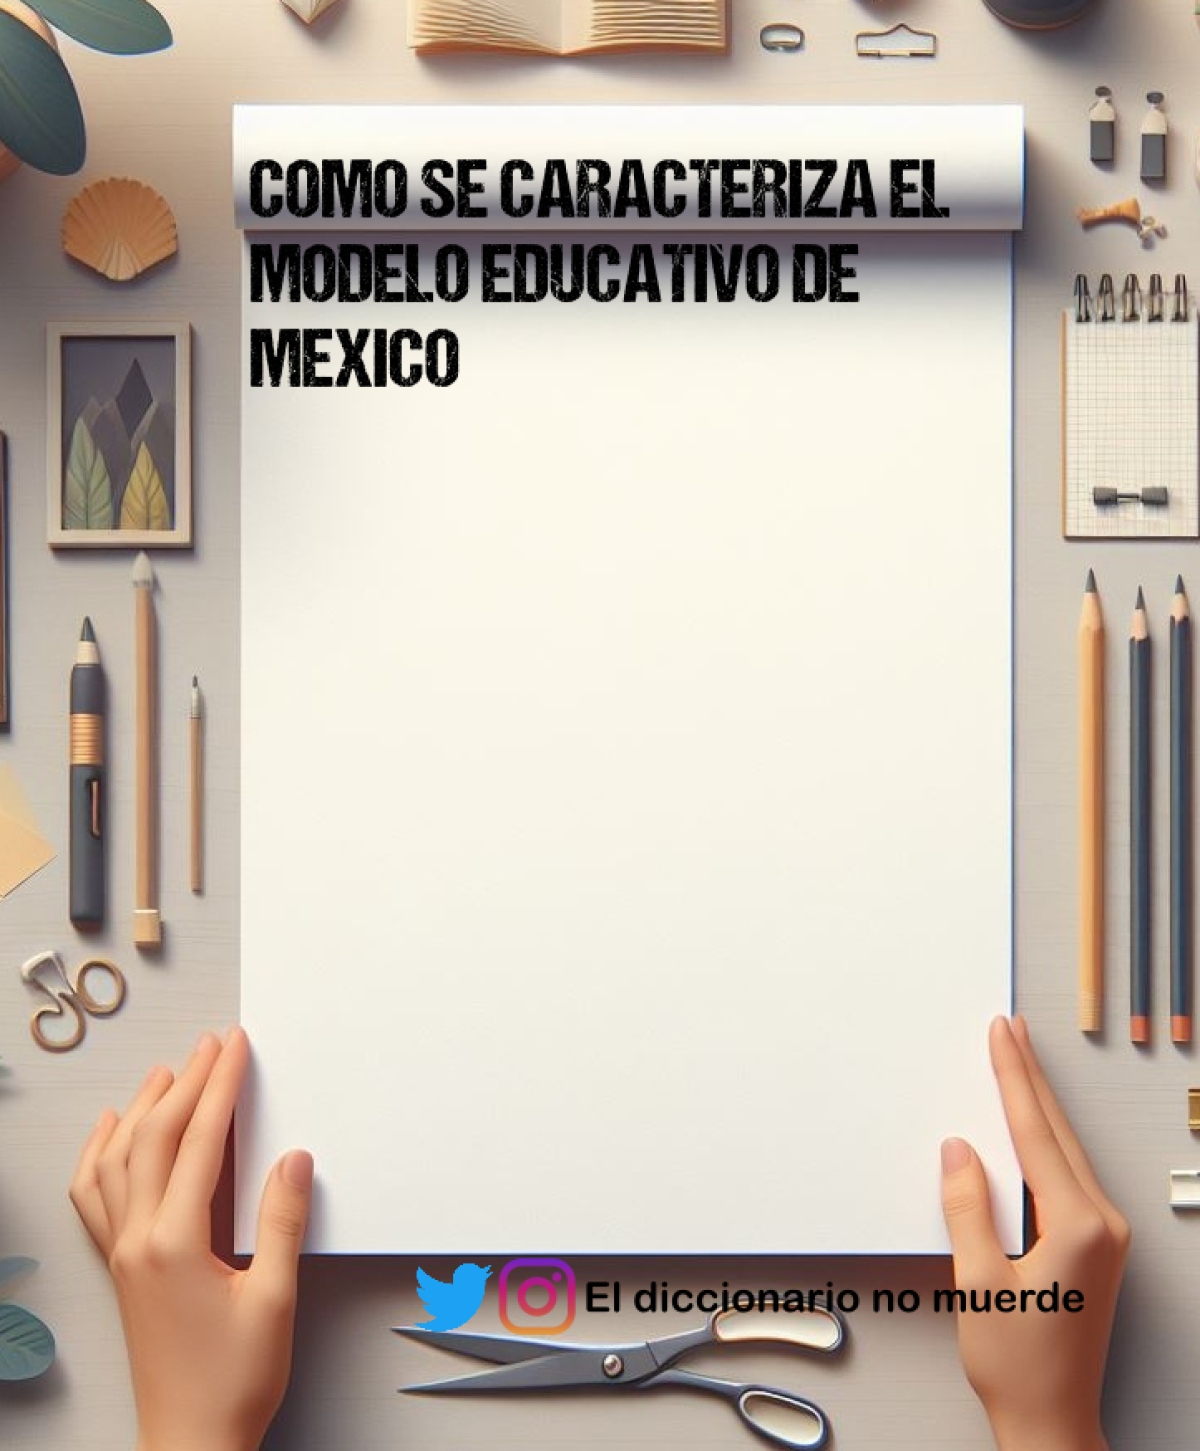 COMO SE CARACTERIZA EL MODELO EDUCATIVO DE MEXICO